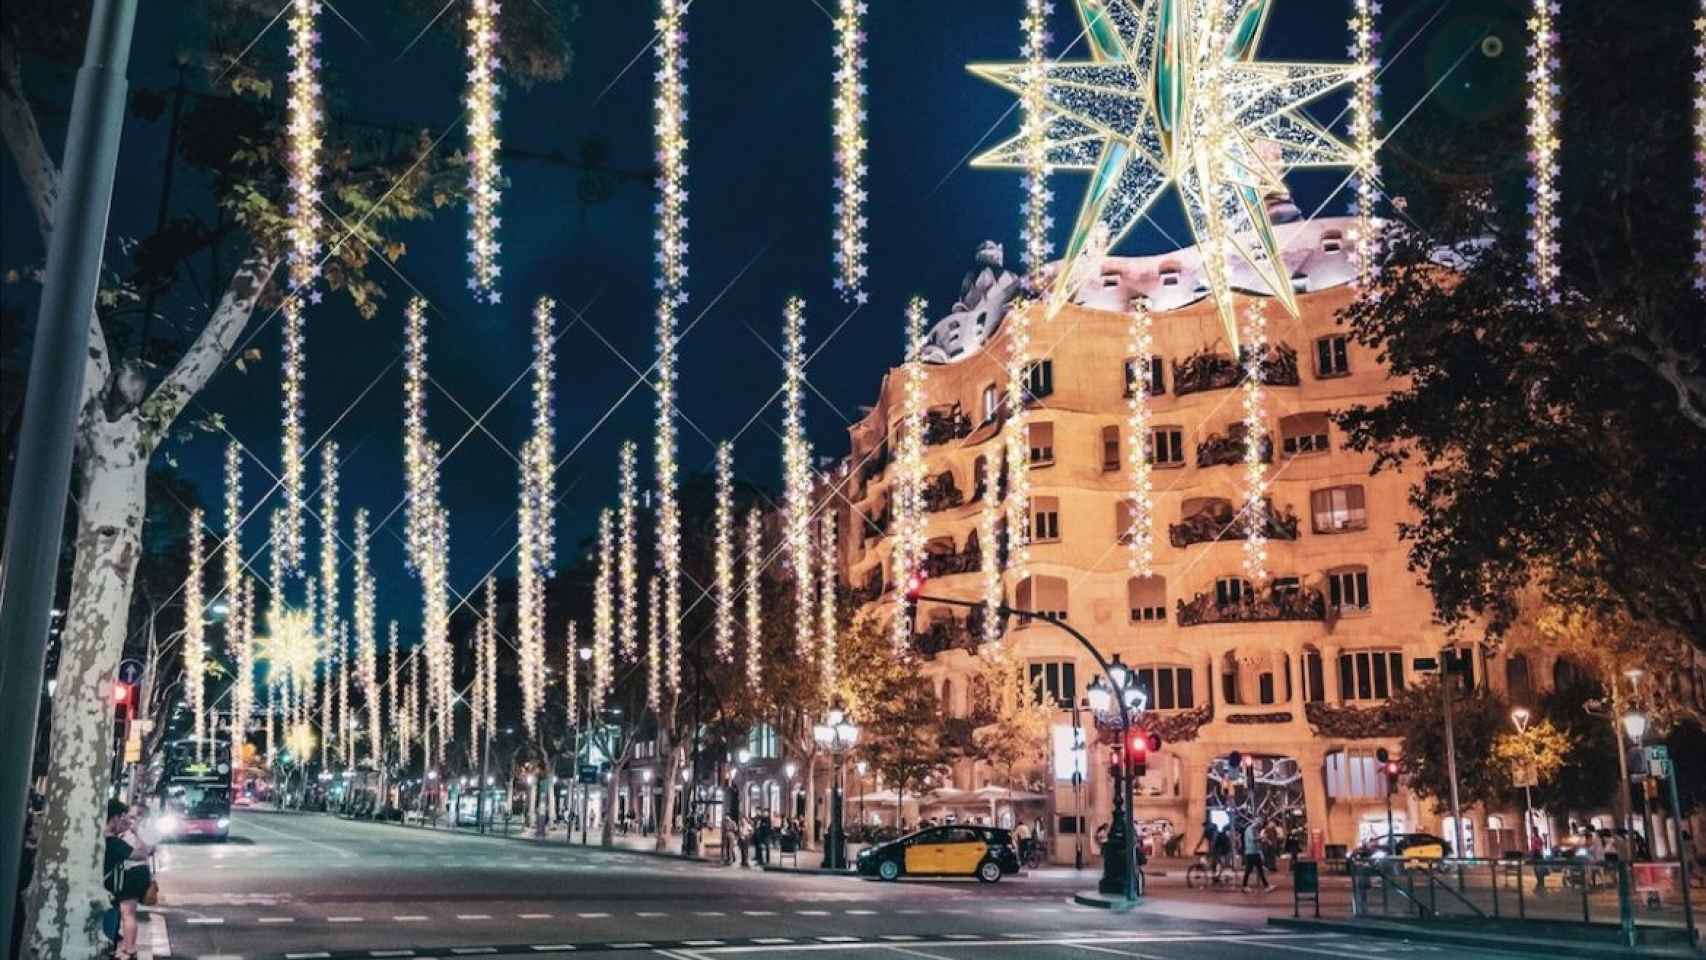 Luces de Navidad en Barcelona en una imagen de archivo